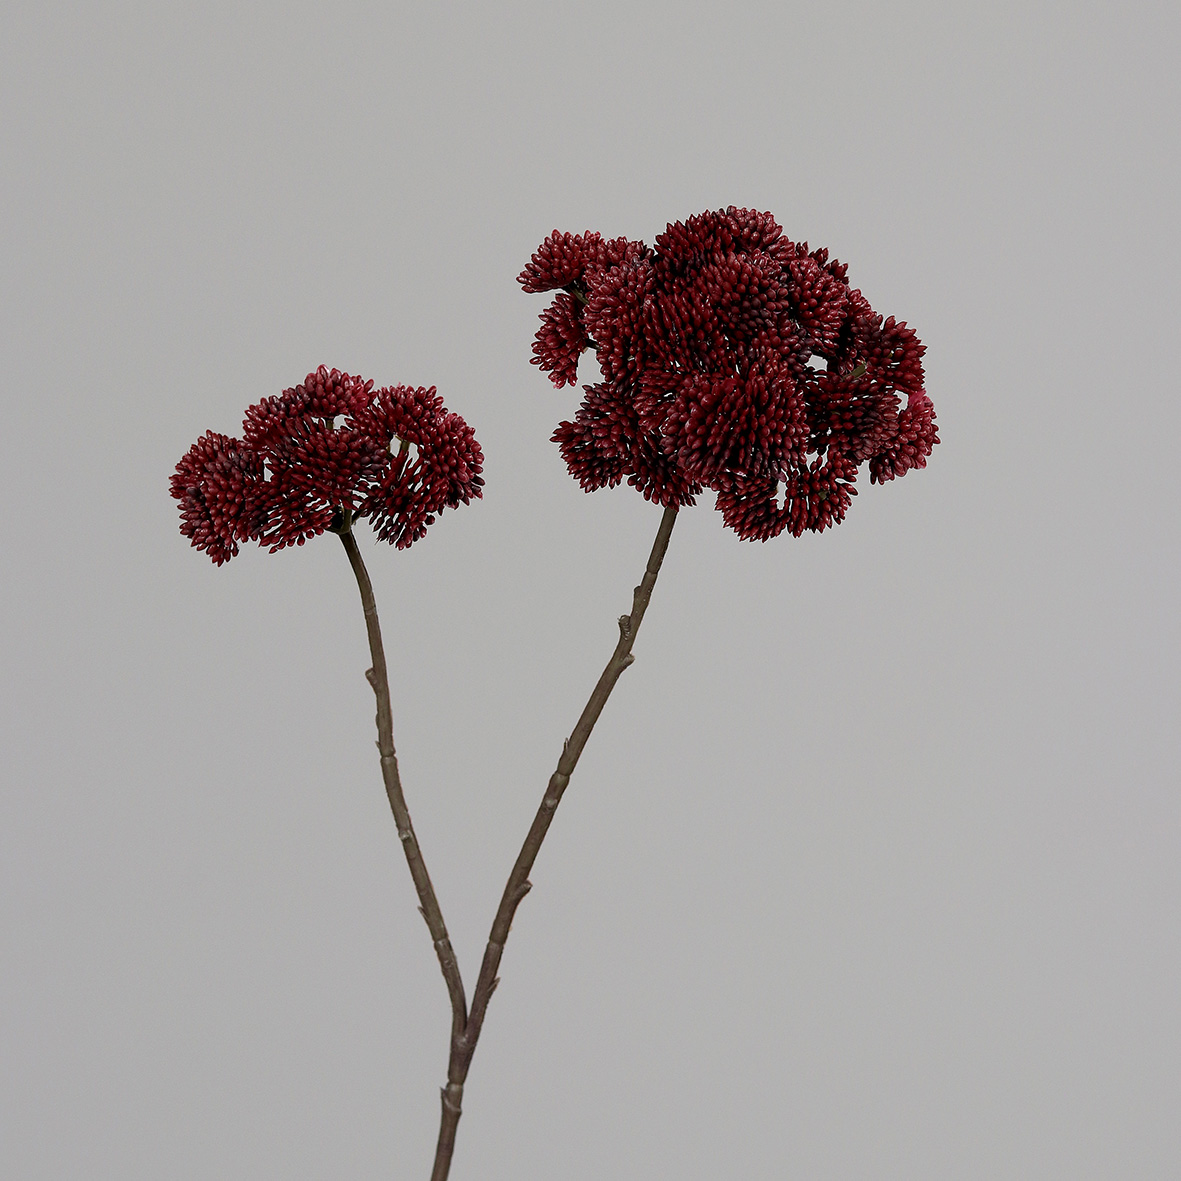 Anethumzweig / Dillzweig mit 2 Köpfen 68cm bordeaux DP Kunstblumen künstliche Blumen Dill Anethum